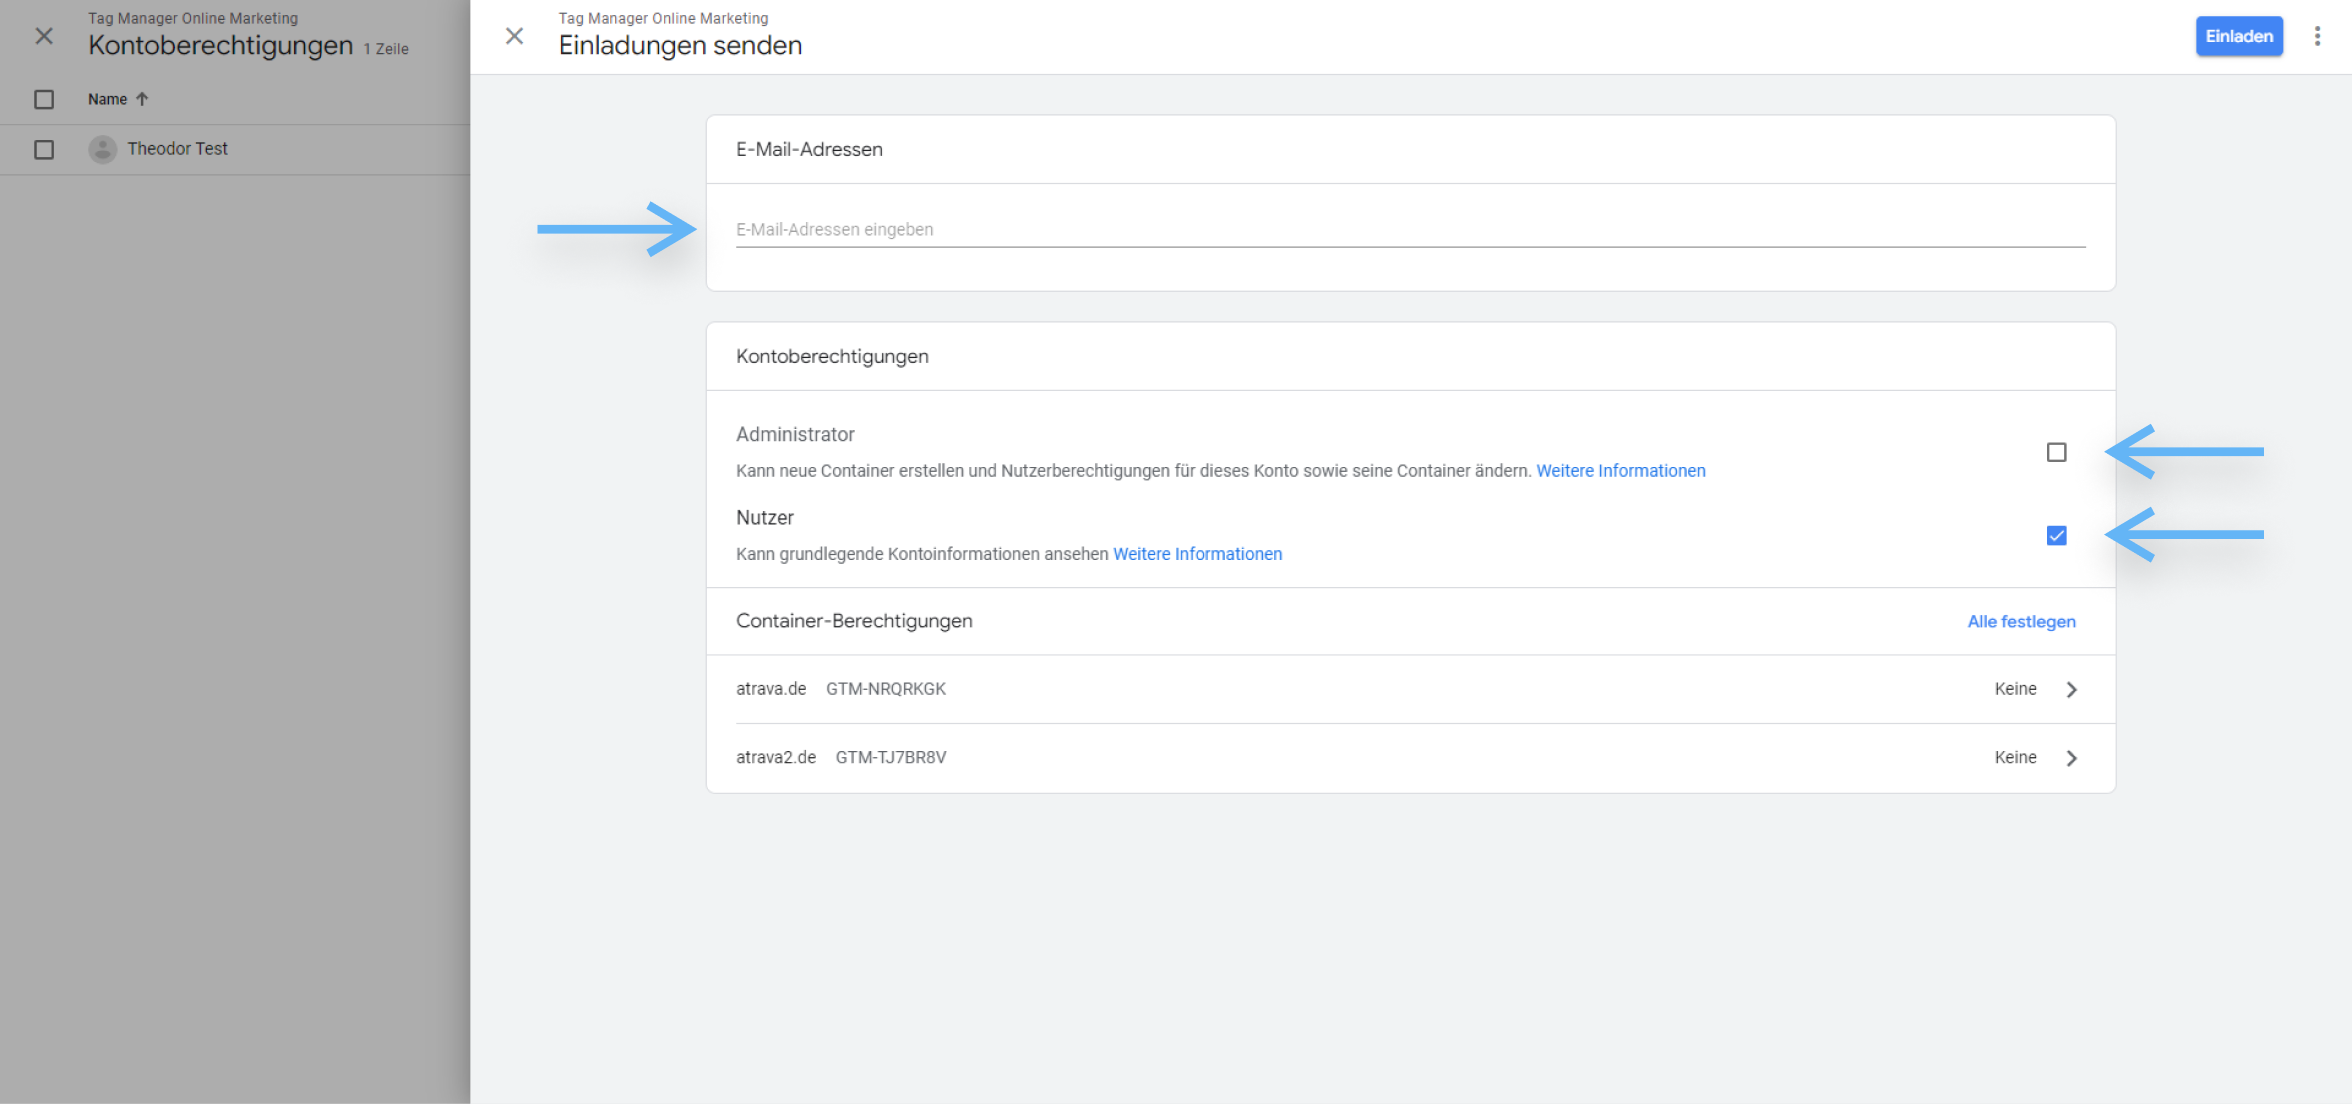 atrava - Google Tag Manager Anleitung - Email-Adresse hinzufügen, Berechtigungen vergeben